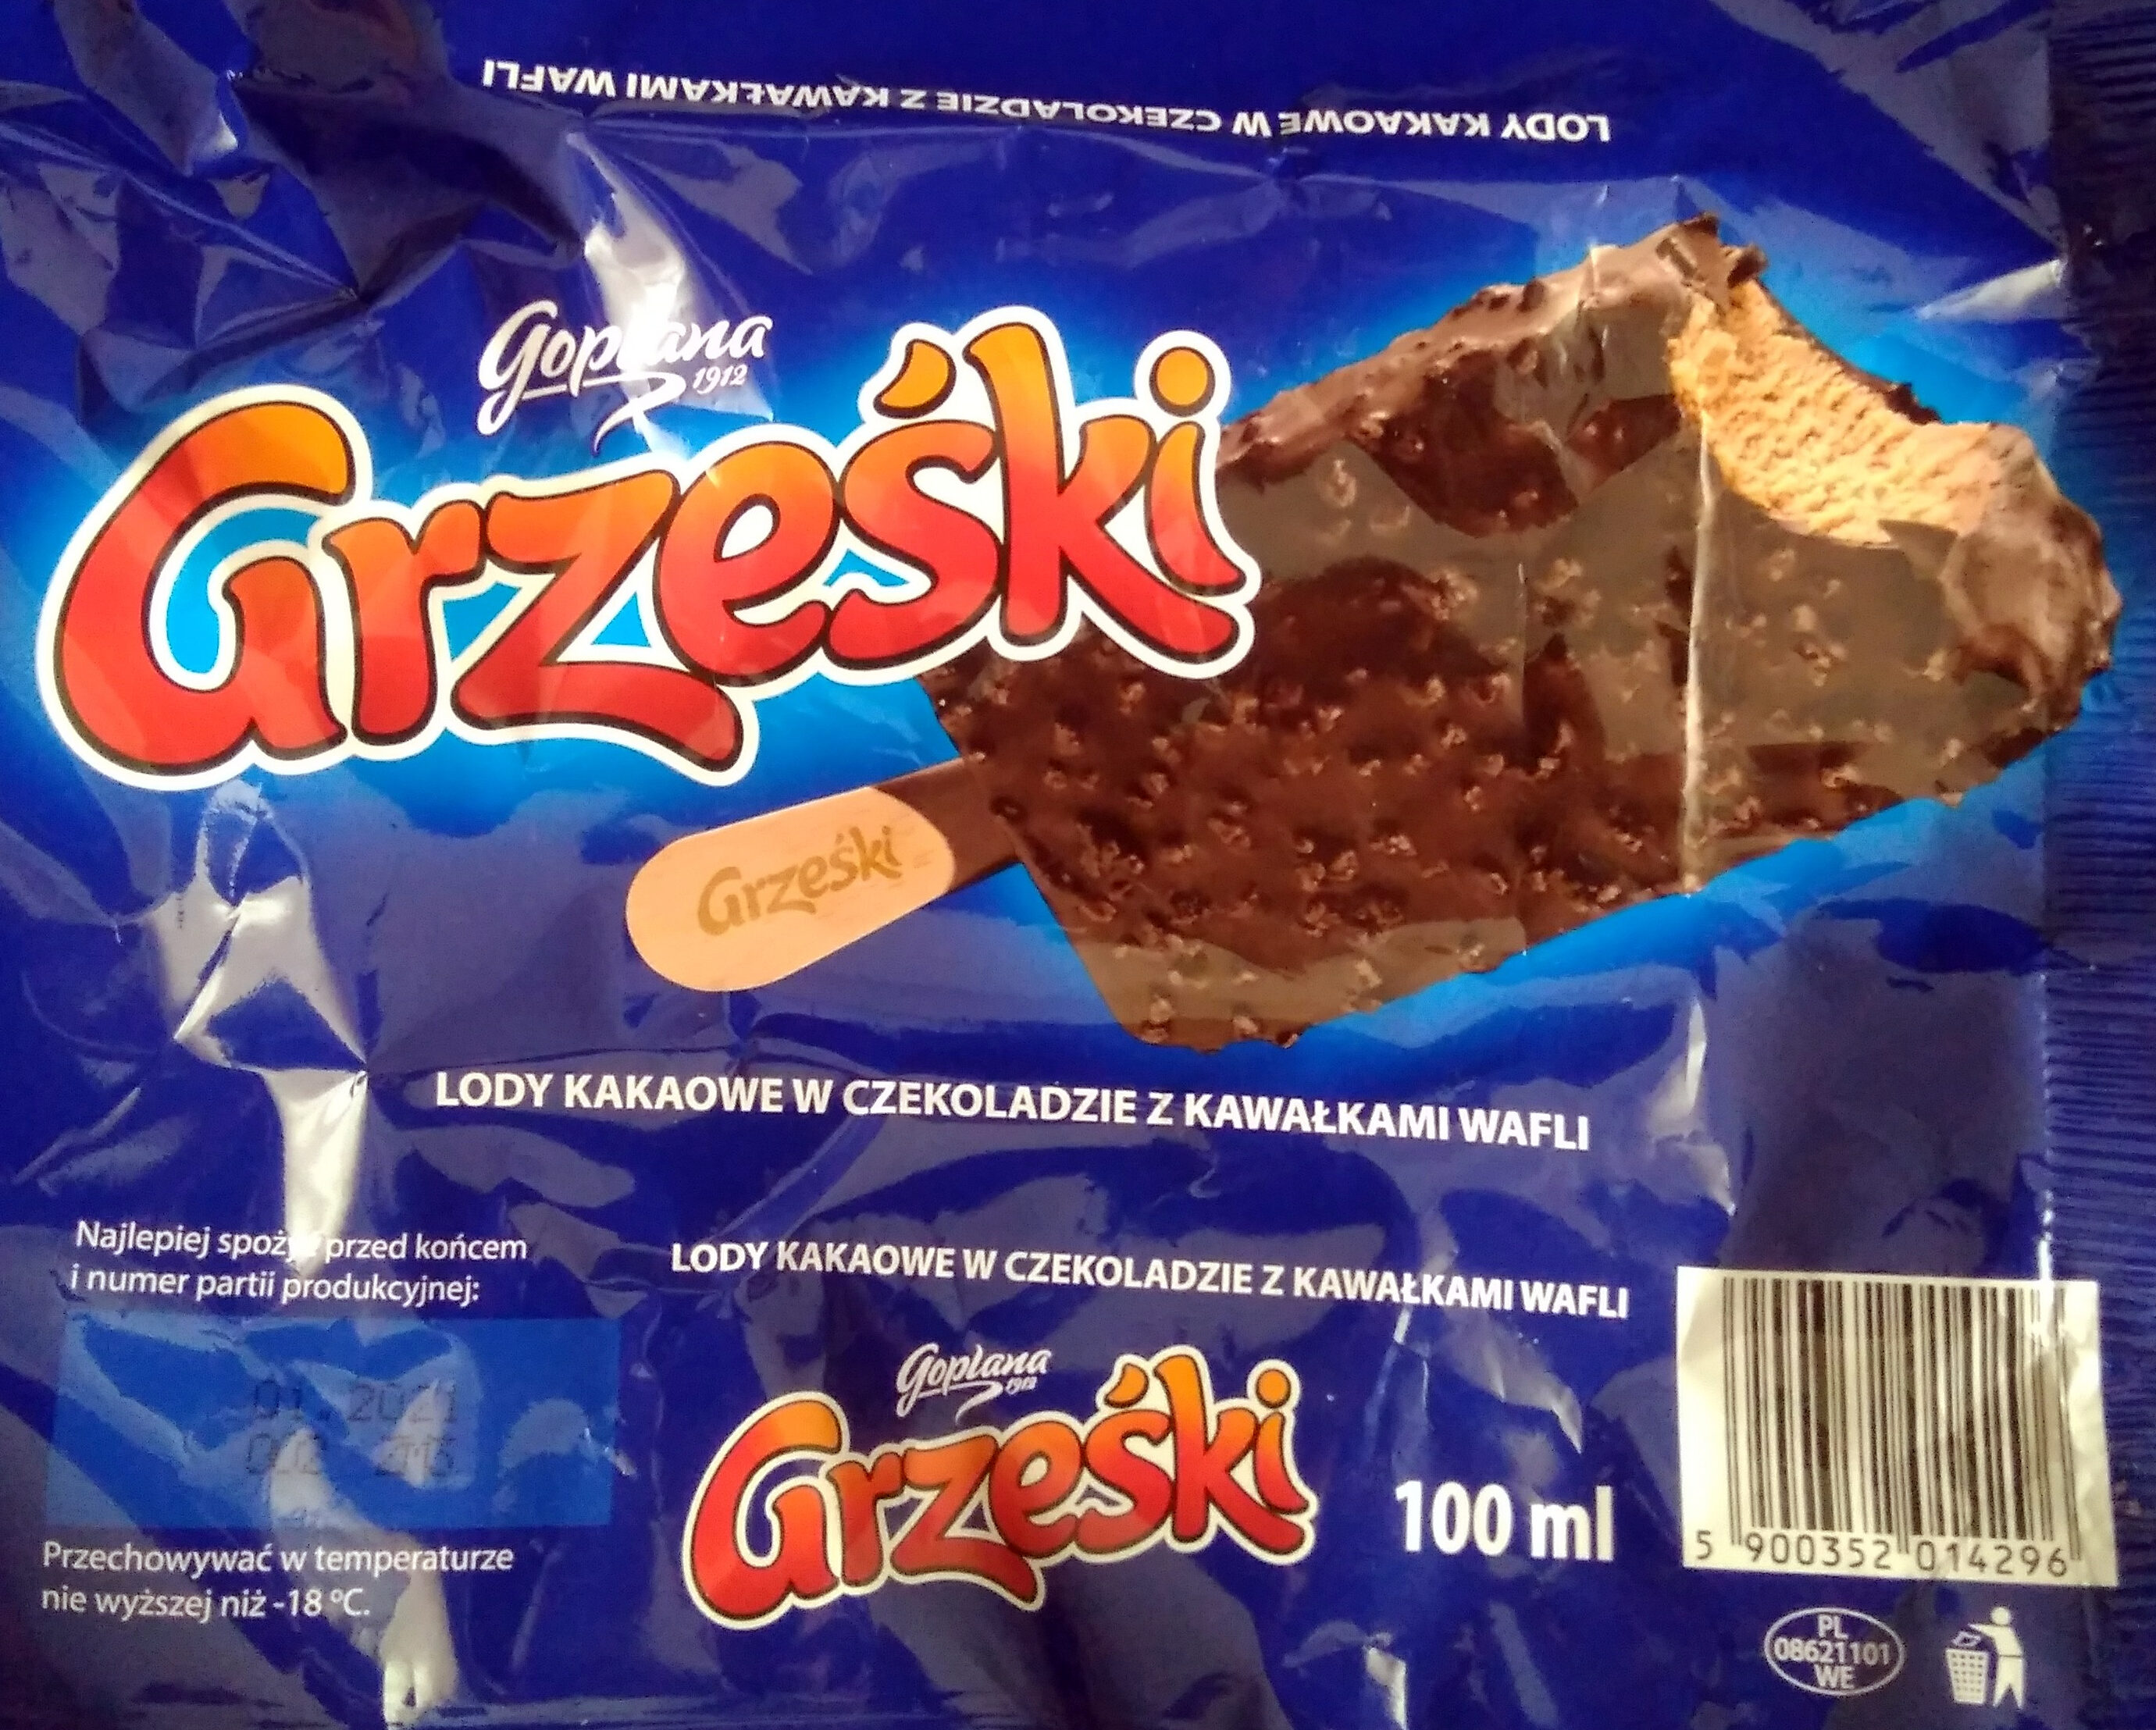 Lody kakaowe w czekoladzie z kawałkami wafli. - Product - pl